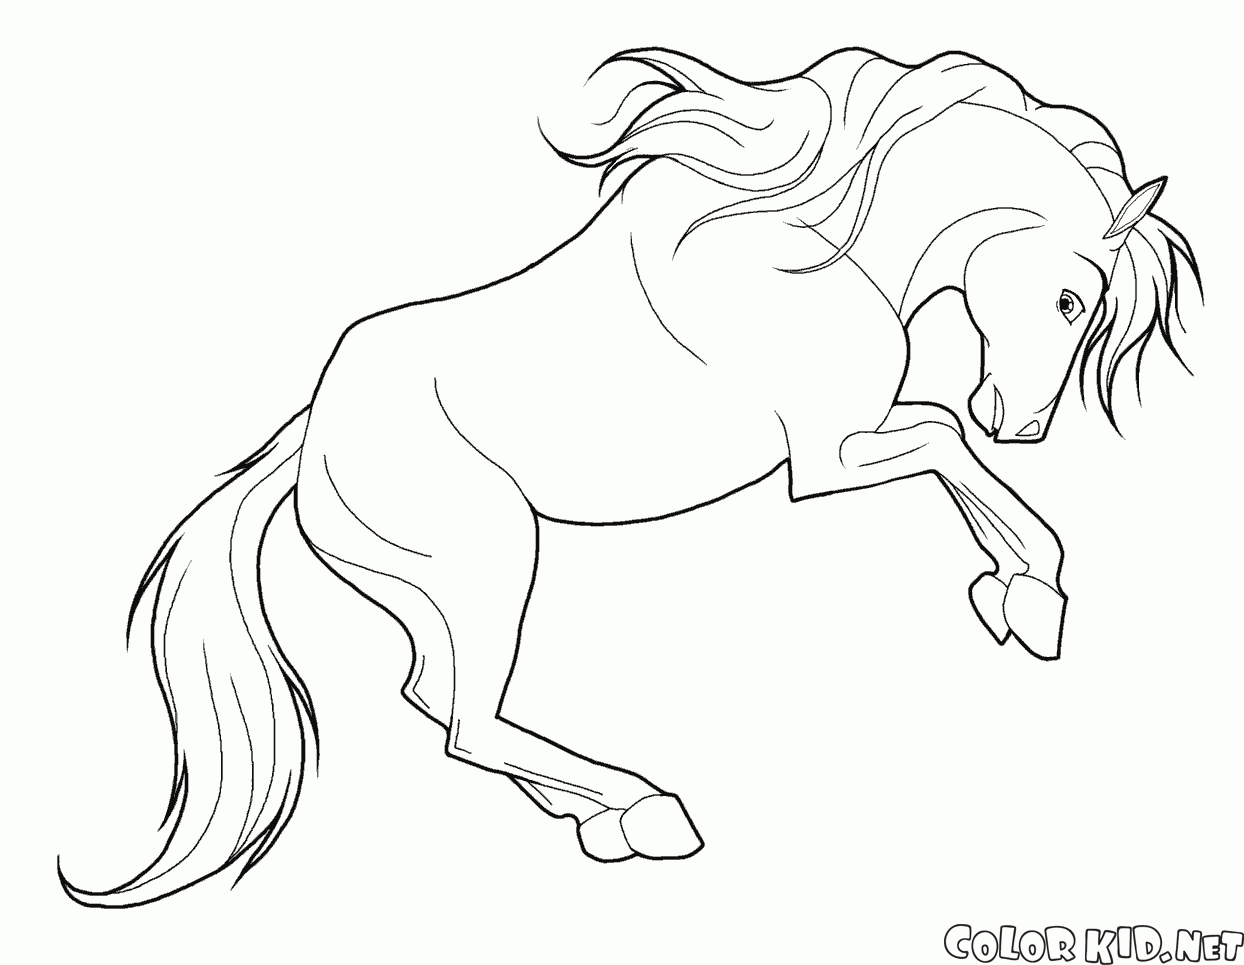 Disegni da colorare cavalli for Immagini di cavalli da disegnare